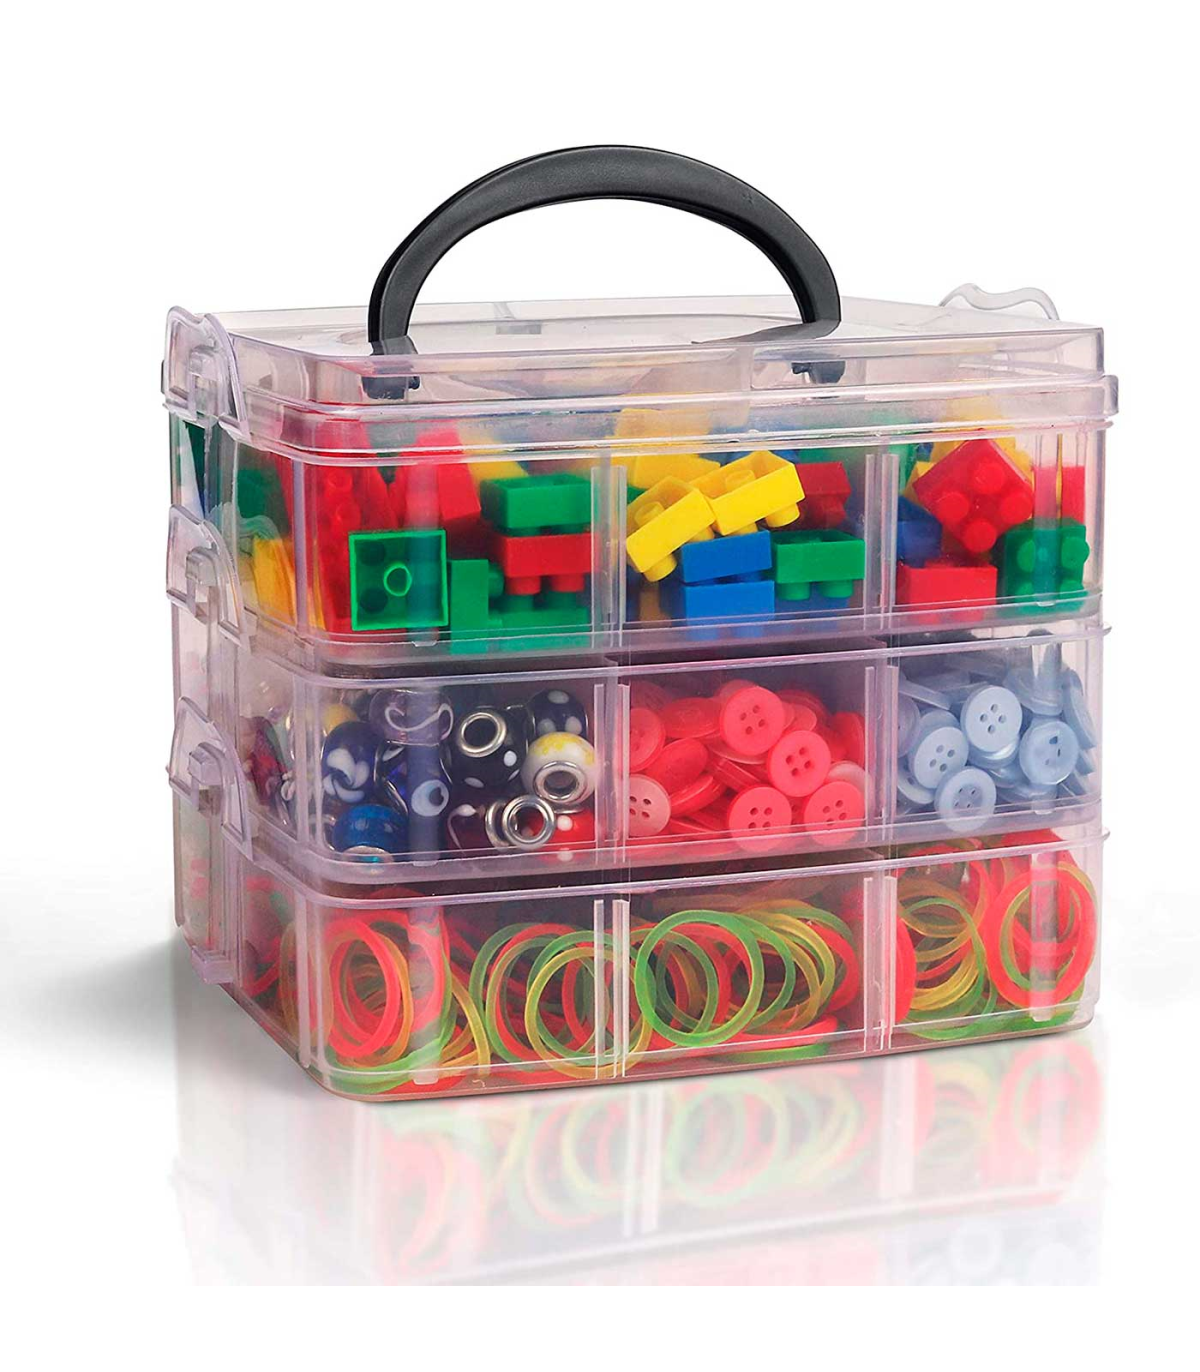 Caja multiusos plastico 10 l n 24 tapa de color con asa 385x230x175 mm